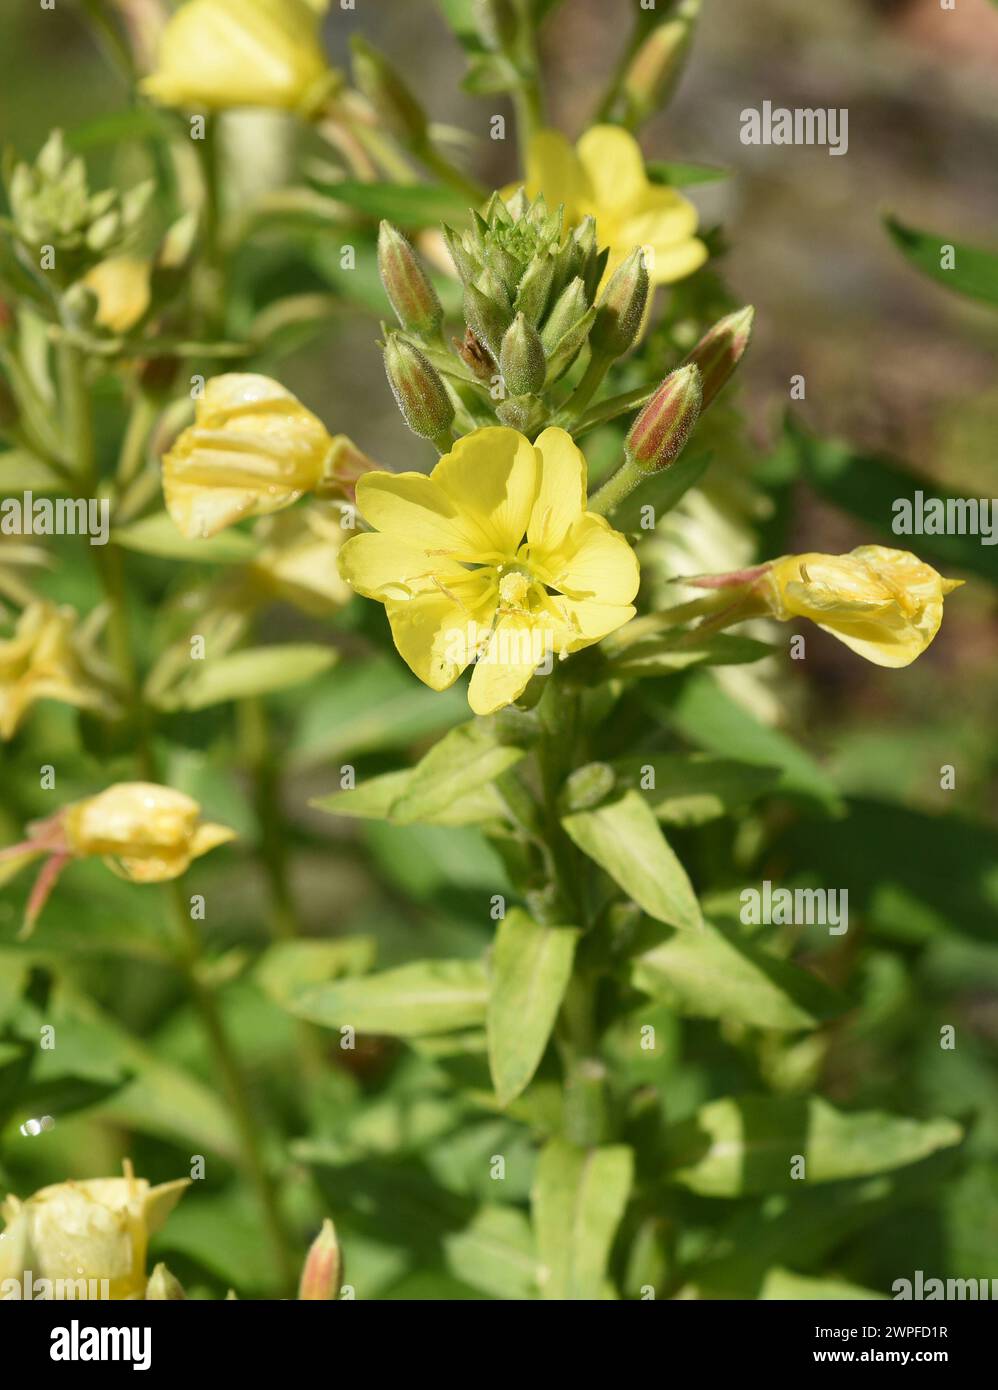 Nachtkerze, Oenothera biennis ist eine wichtige Heilpflanze mit gelben Blueten. Onagre, Oenothera biennis est une plante médicinale importante wi Banque D'Images